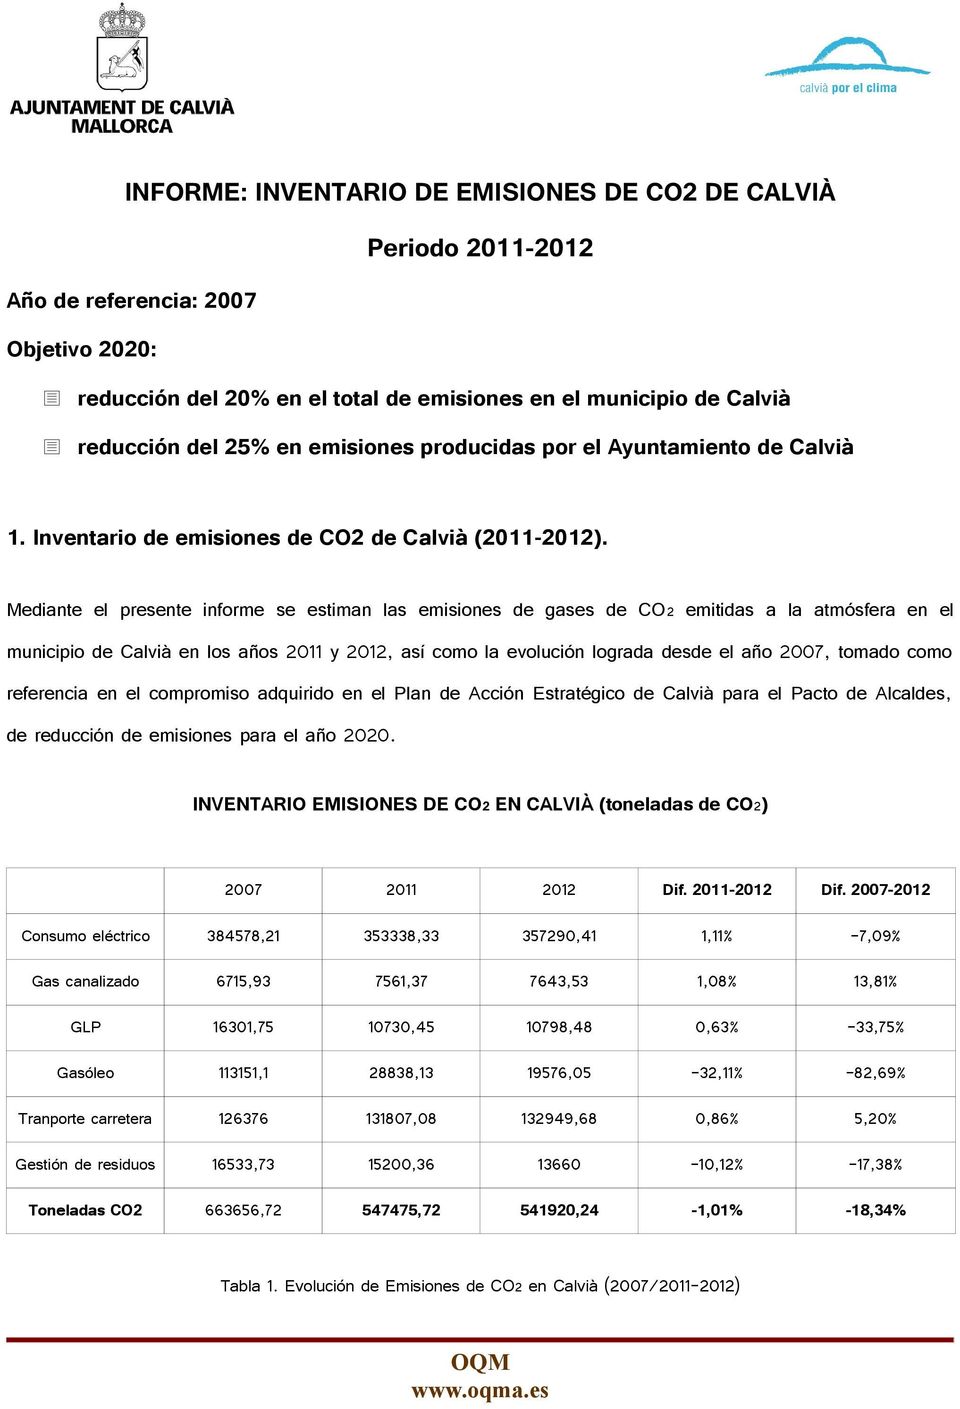 Mediante el presente informe se estiman las emisiones de gases de CO2 emitidas a la atmósfera en el municipio de Calvià en los años 2011 y 2012, así como la evolución lograda desde el año 2007,